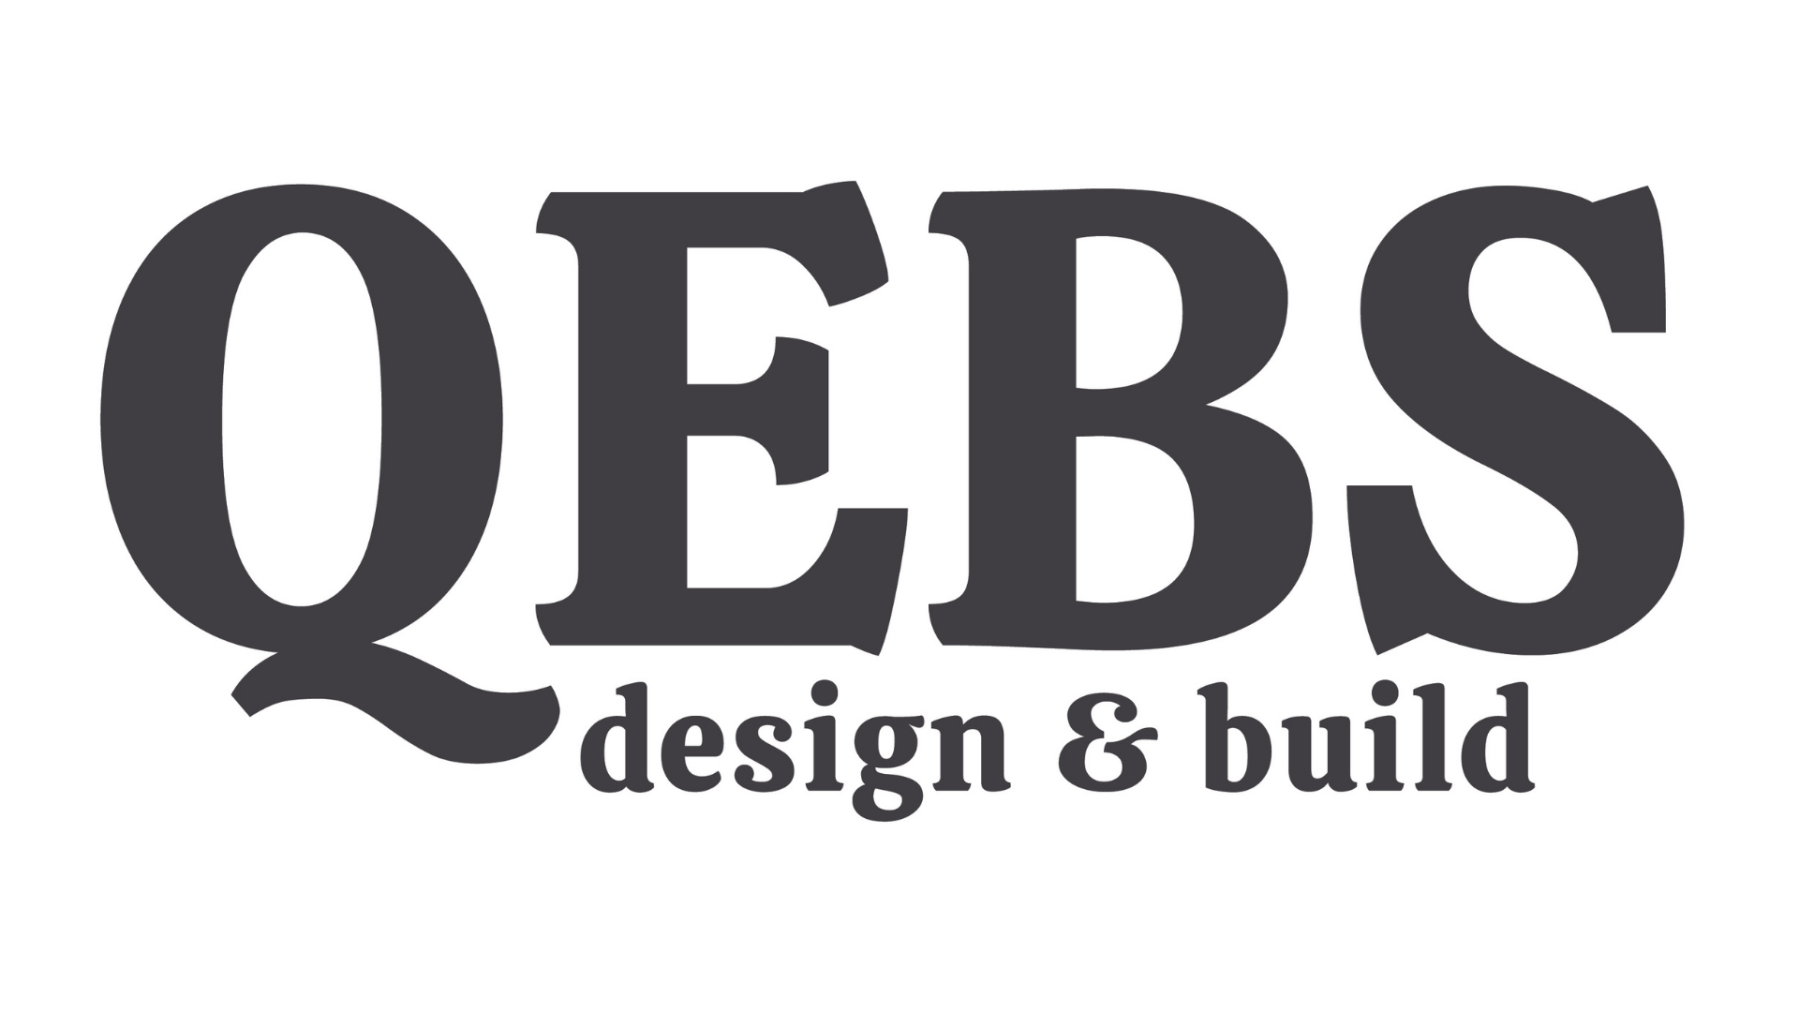 QEBS Design & Build